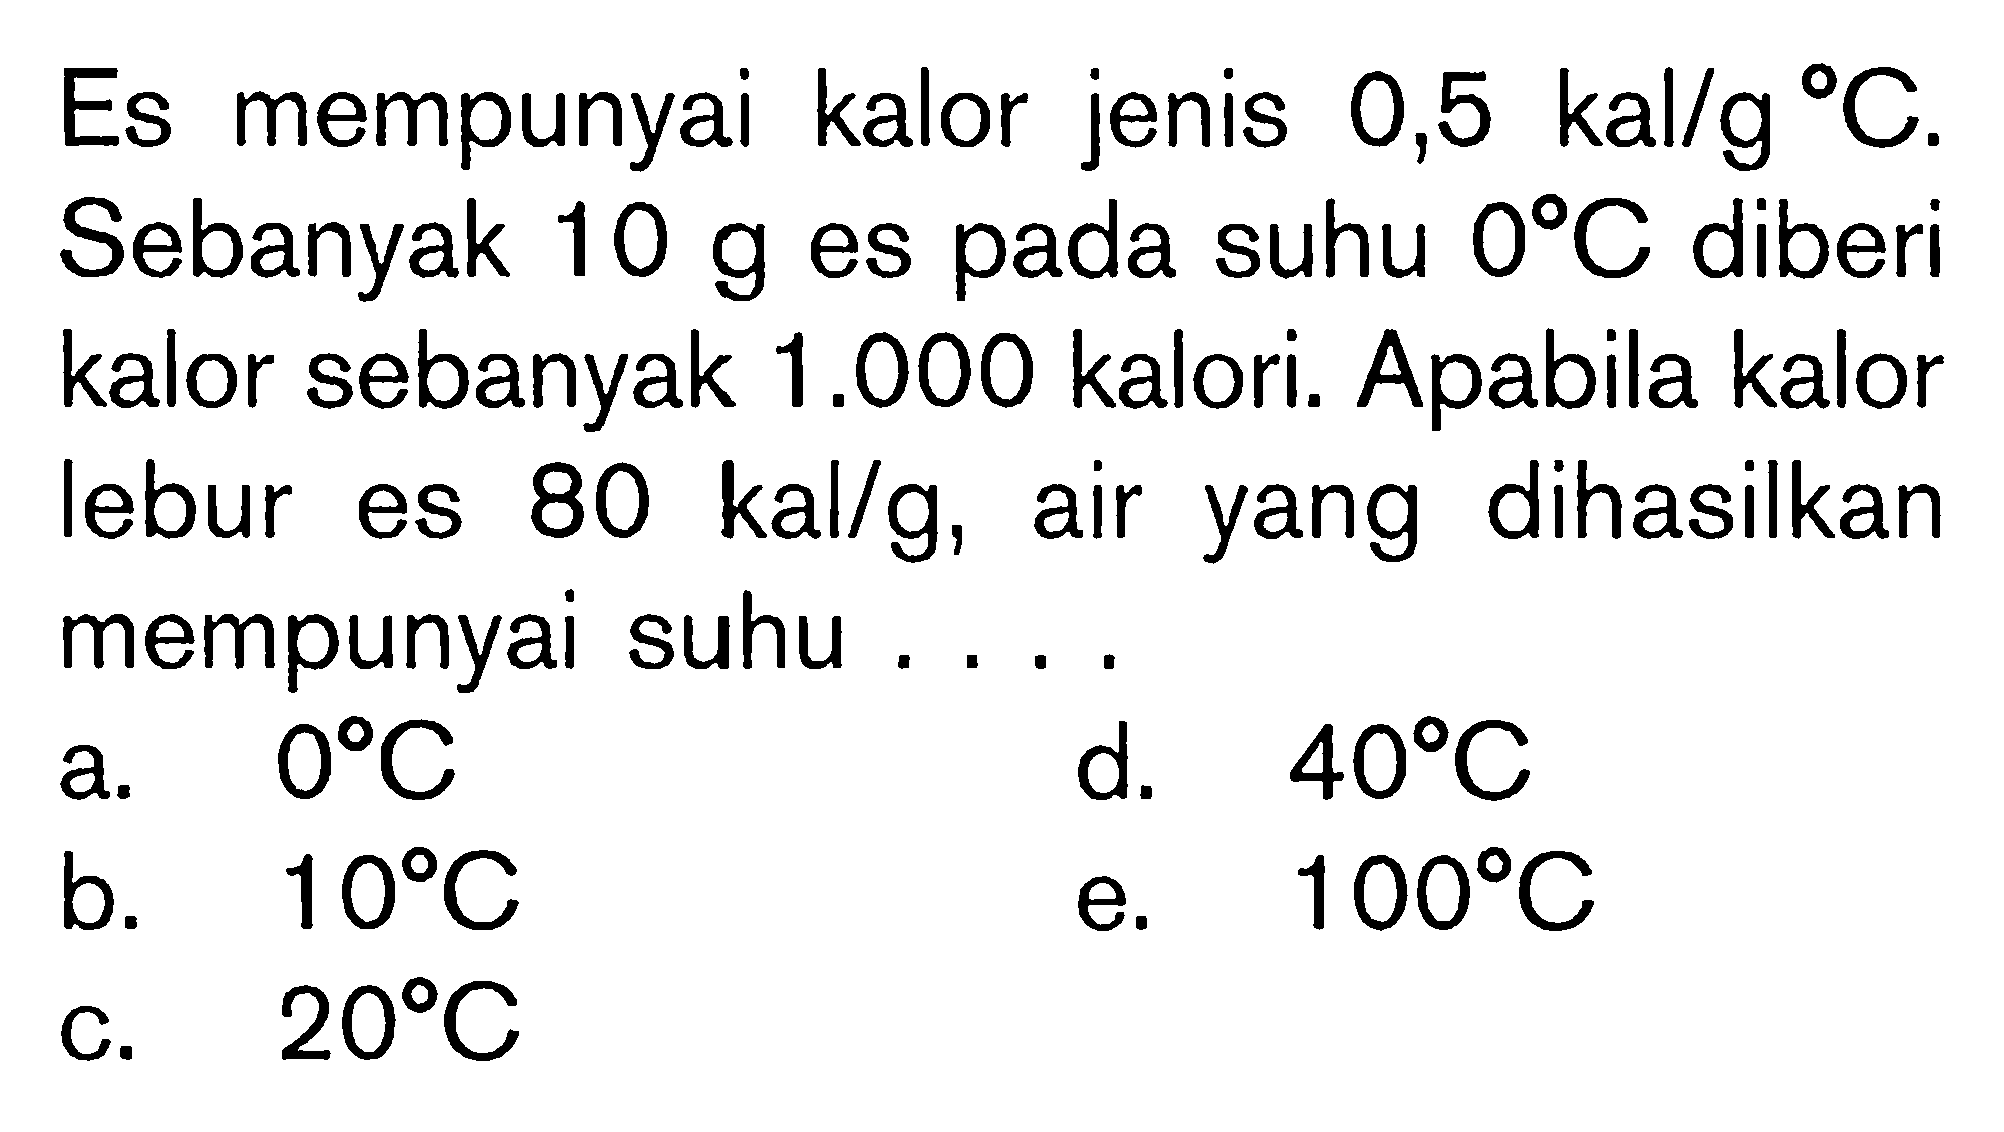 Es mempunyai kalor jenis 0,5 kal/g C. Sebanyak 10 g eS pada suhu 0 C Diberi kalor sebanyak 1.000 kalori. Apabila kalor lebur es 80 kal/g, air yang dihasilkan mempunyai suhu